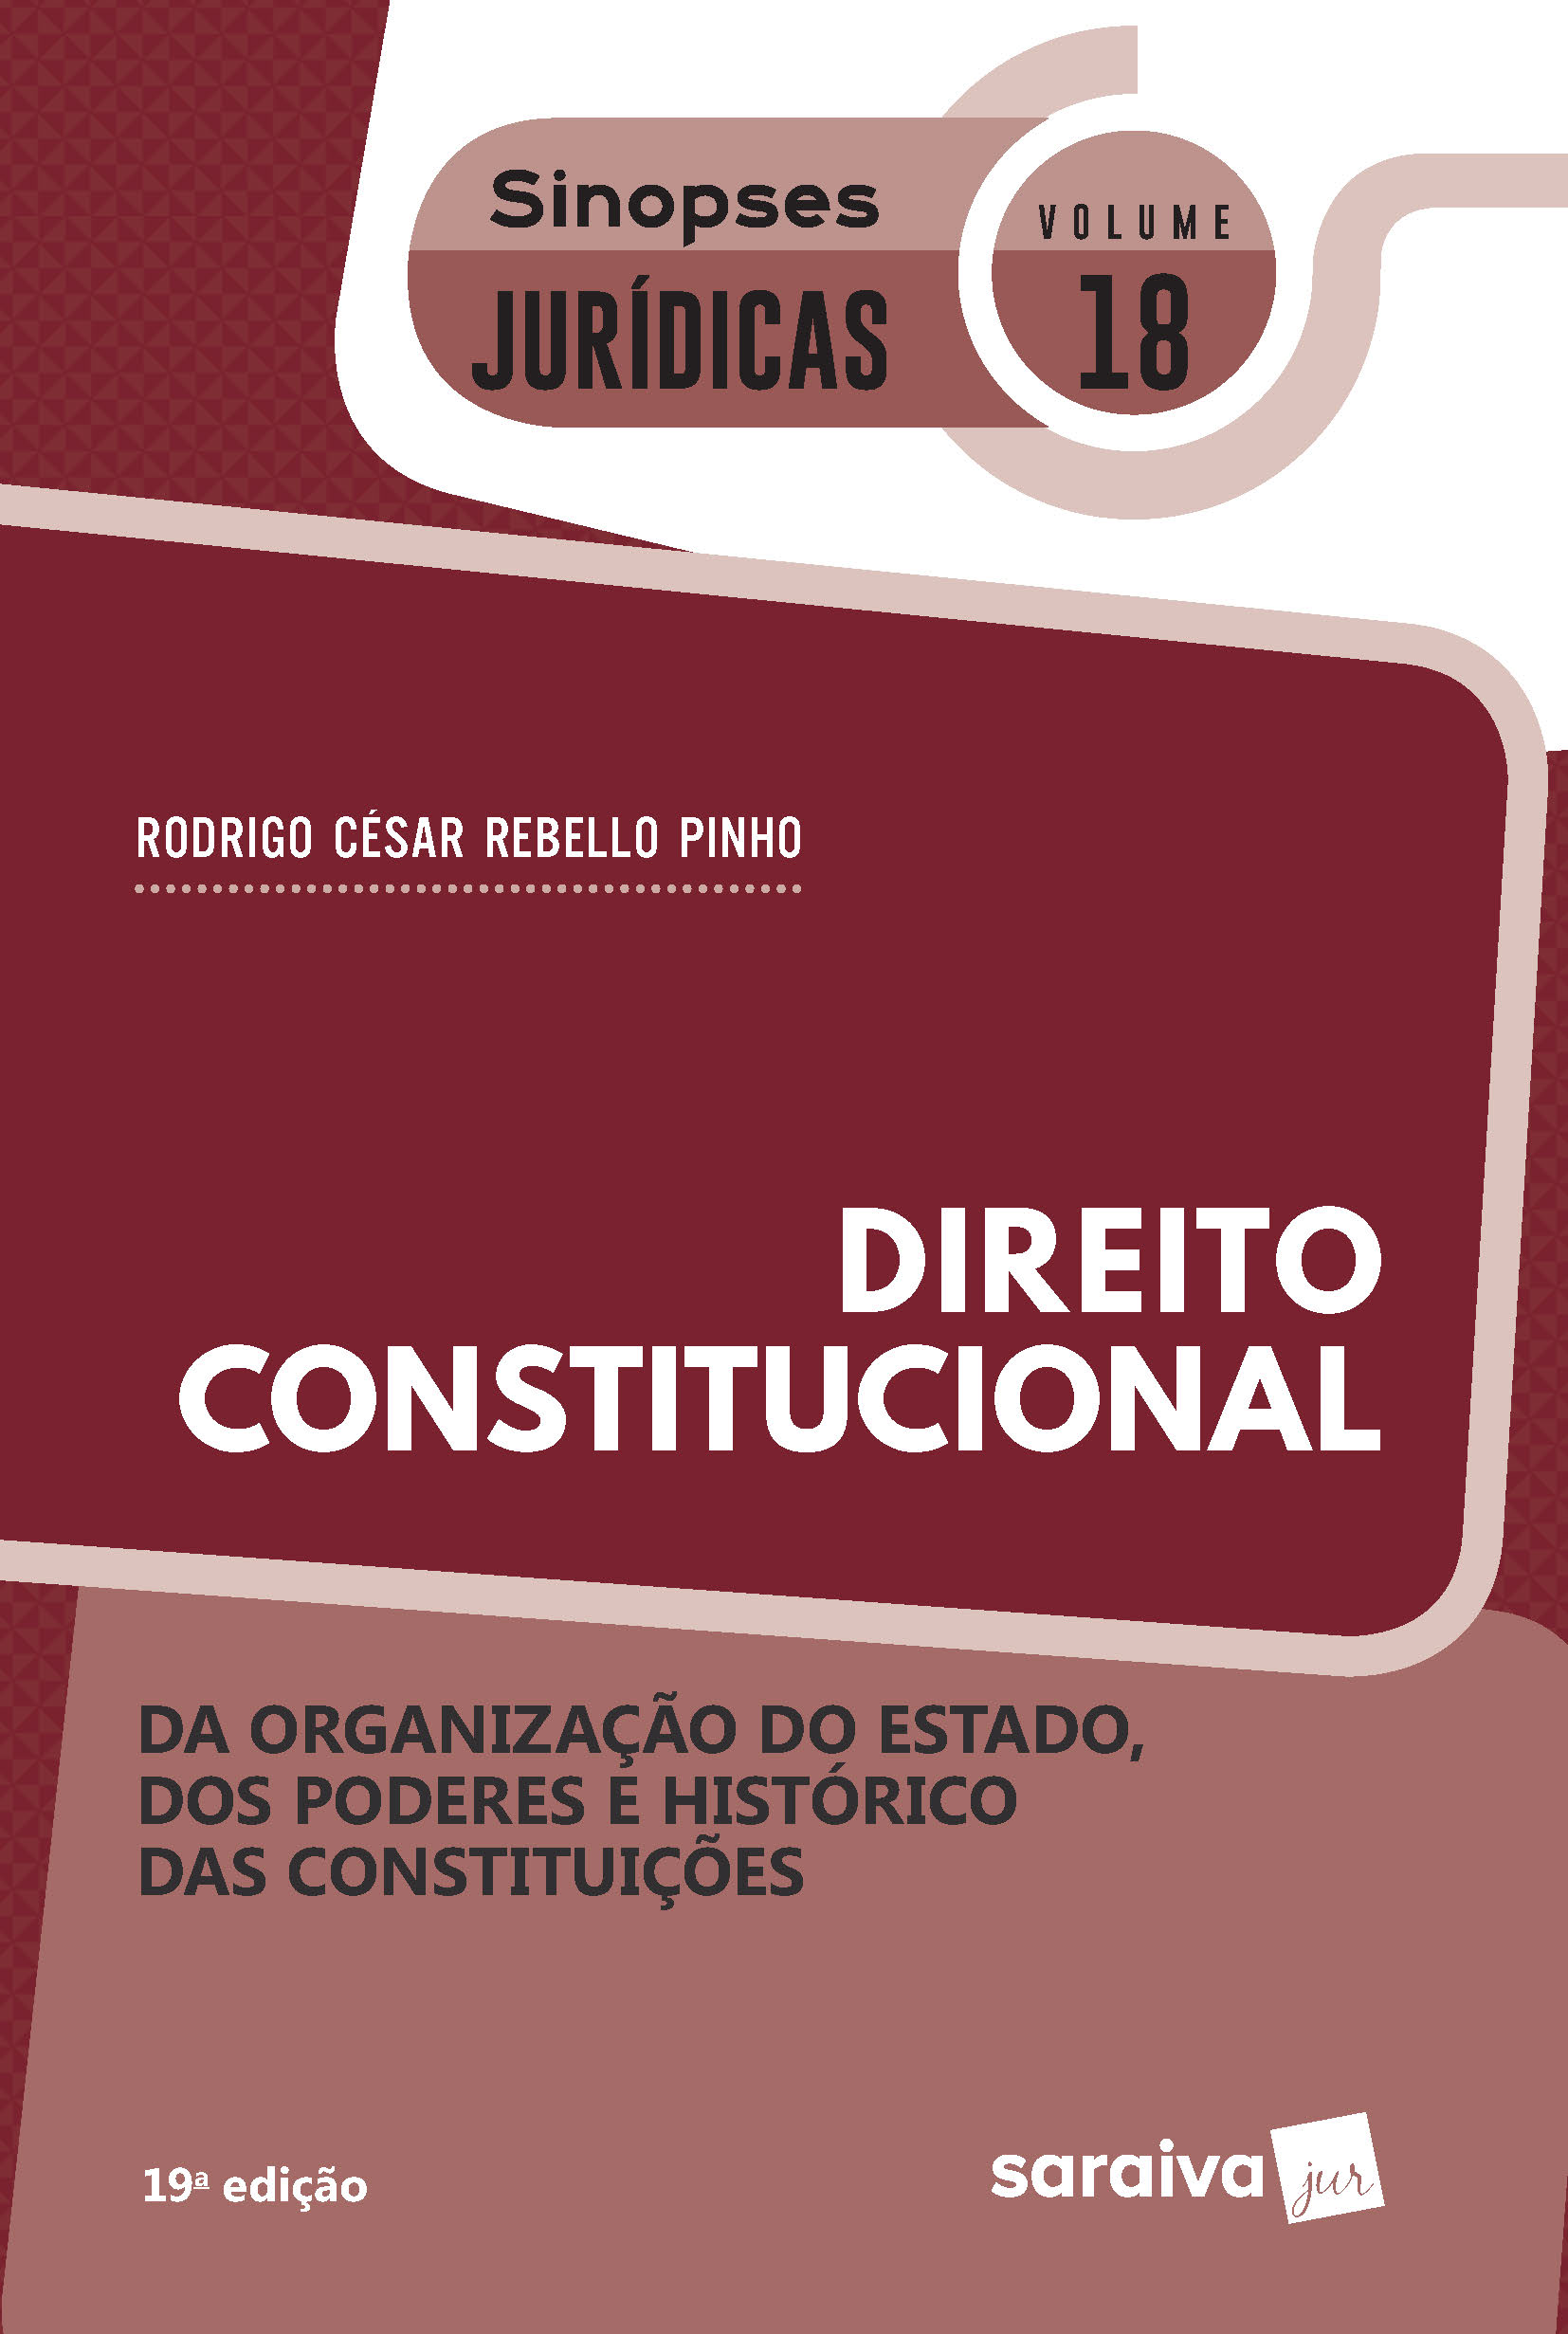 Sinopses -  Direito Constitucional - da Organização do Estado - Vol. 18 - 19ª Edição 2020